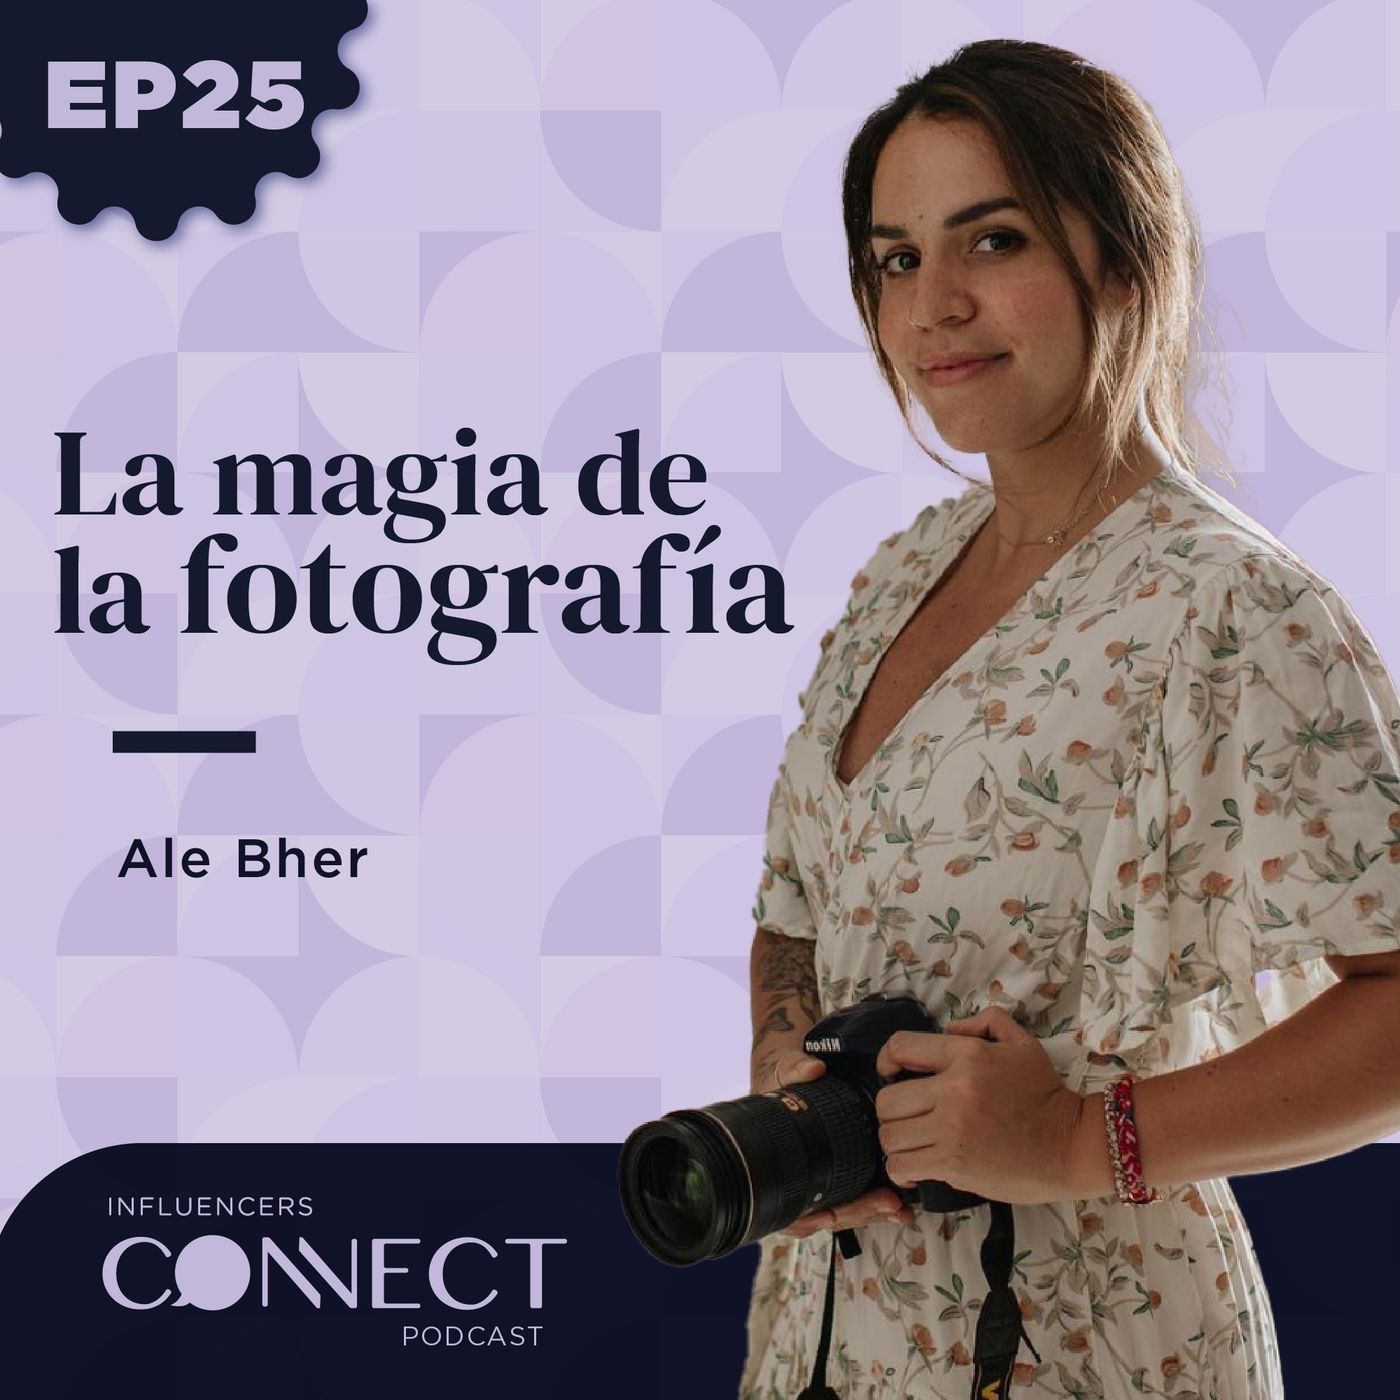 La magia de la fotografía y la maternidad con Ale Behr